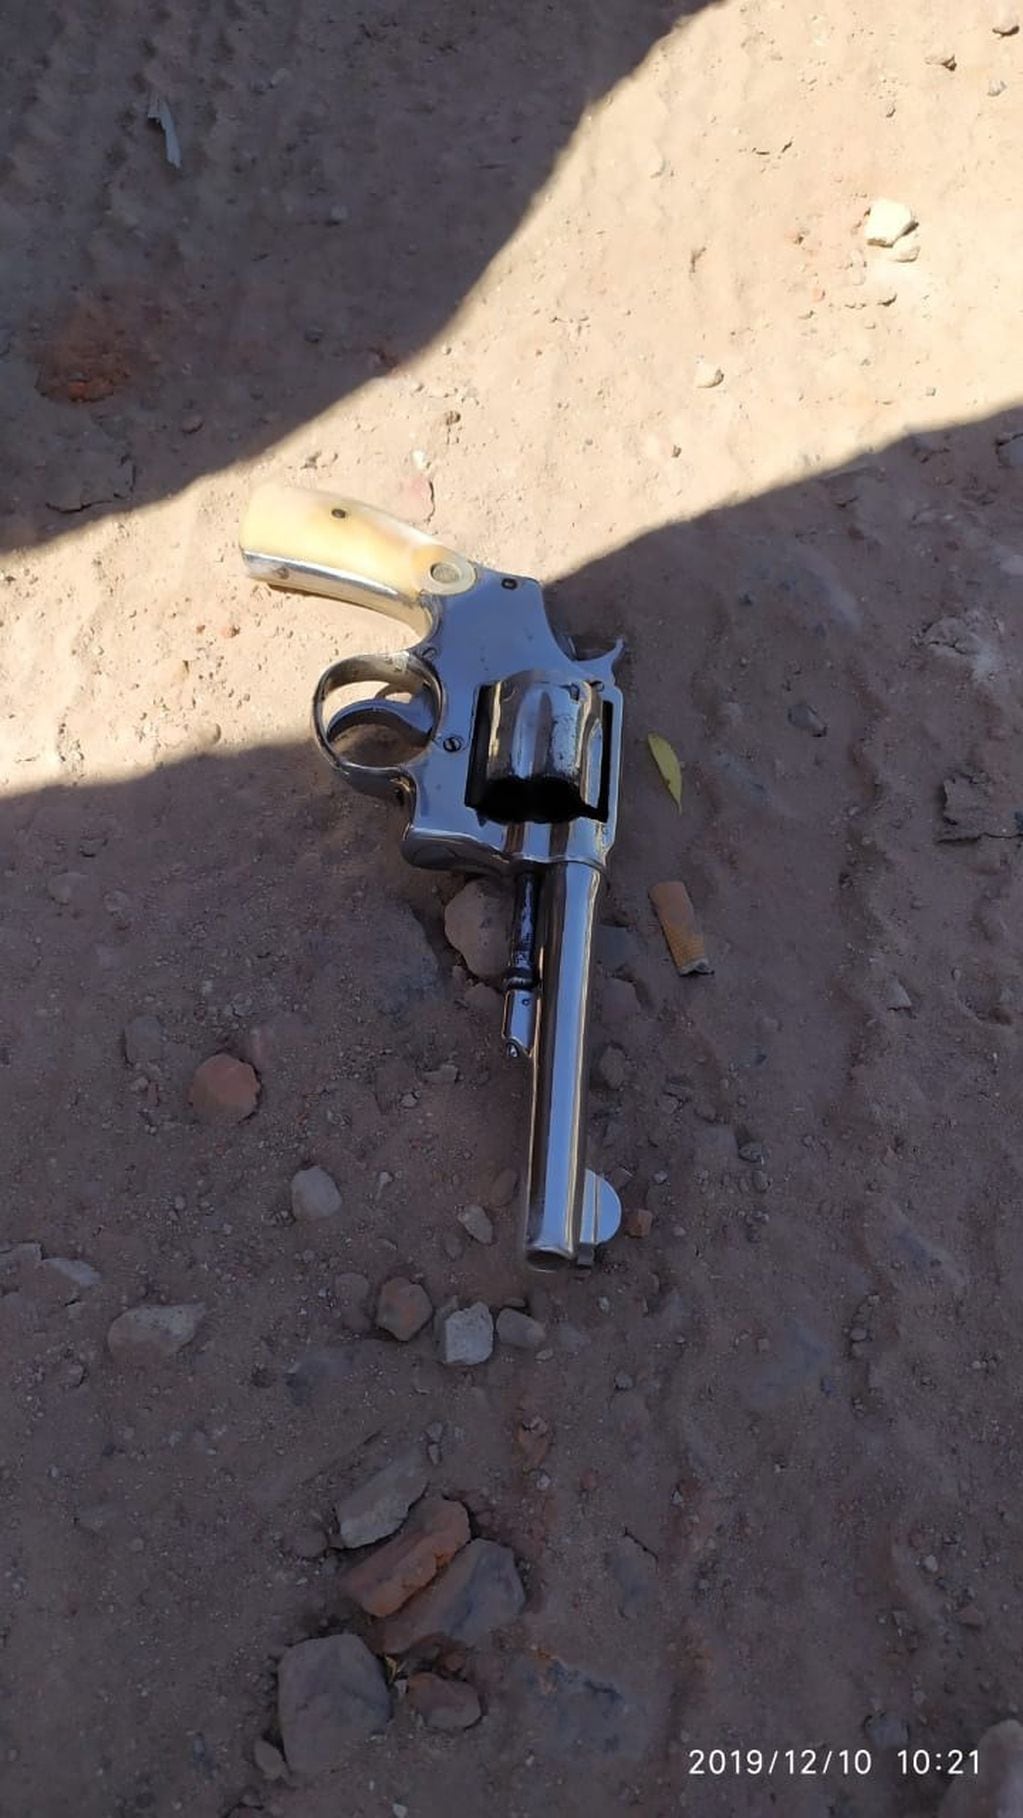 El revólver que utilizaron los delincuentes, calibre 38 (web).